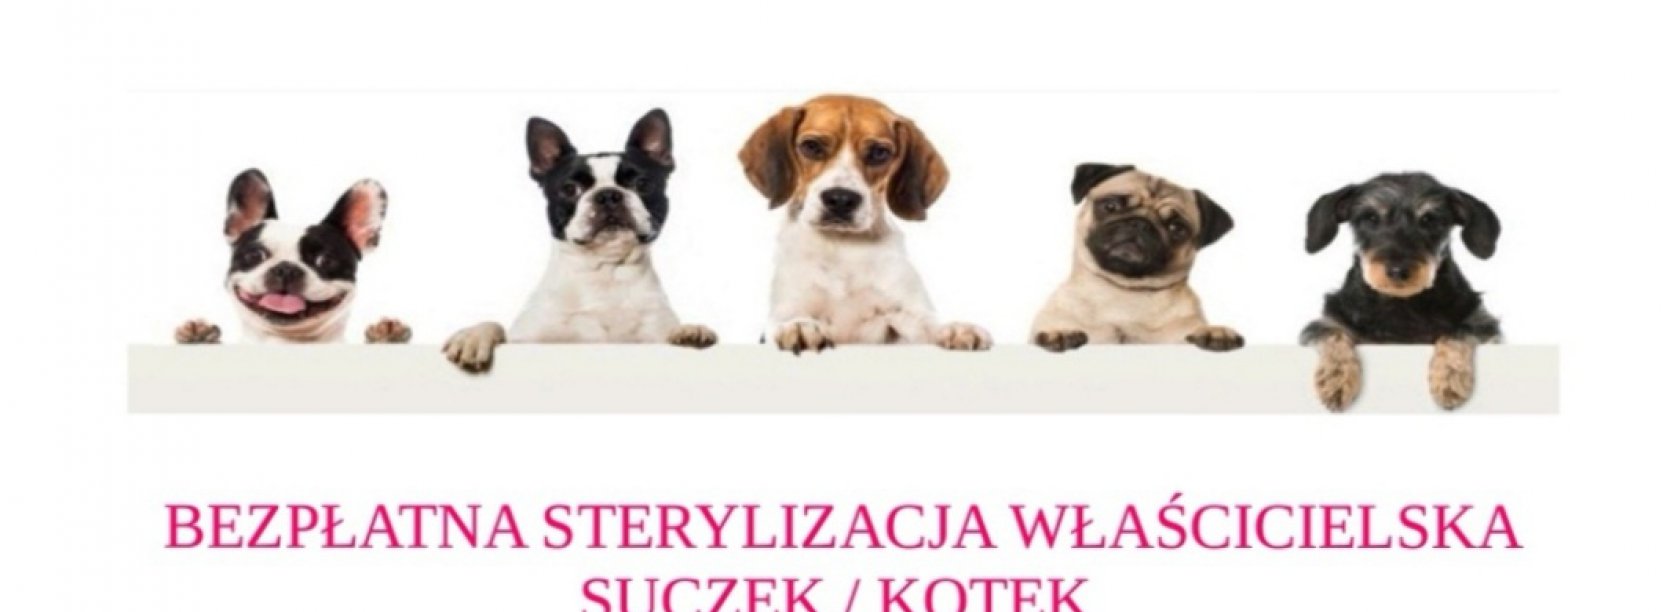 Grafika zachęcająca do sterylizacji, na niej zdjęcia psów